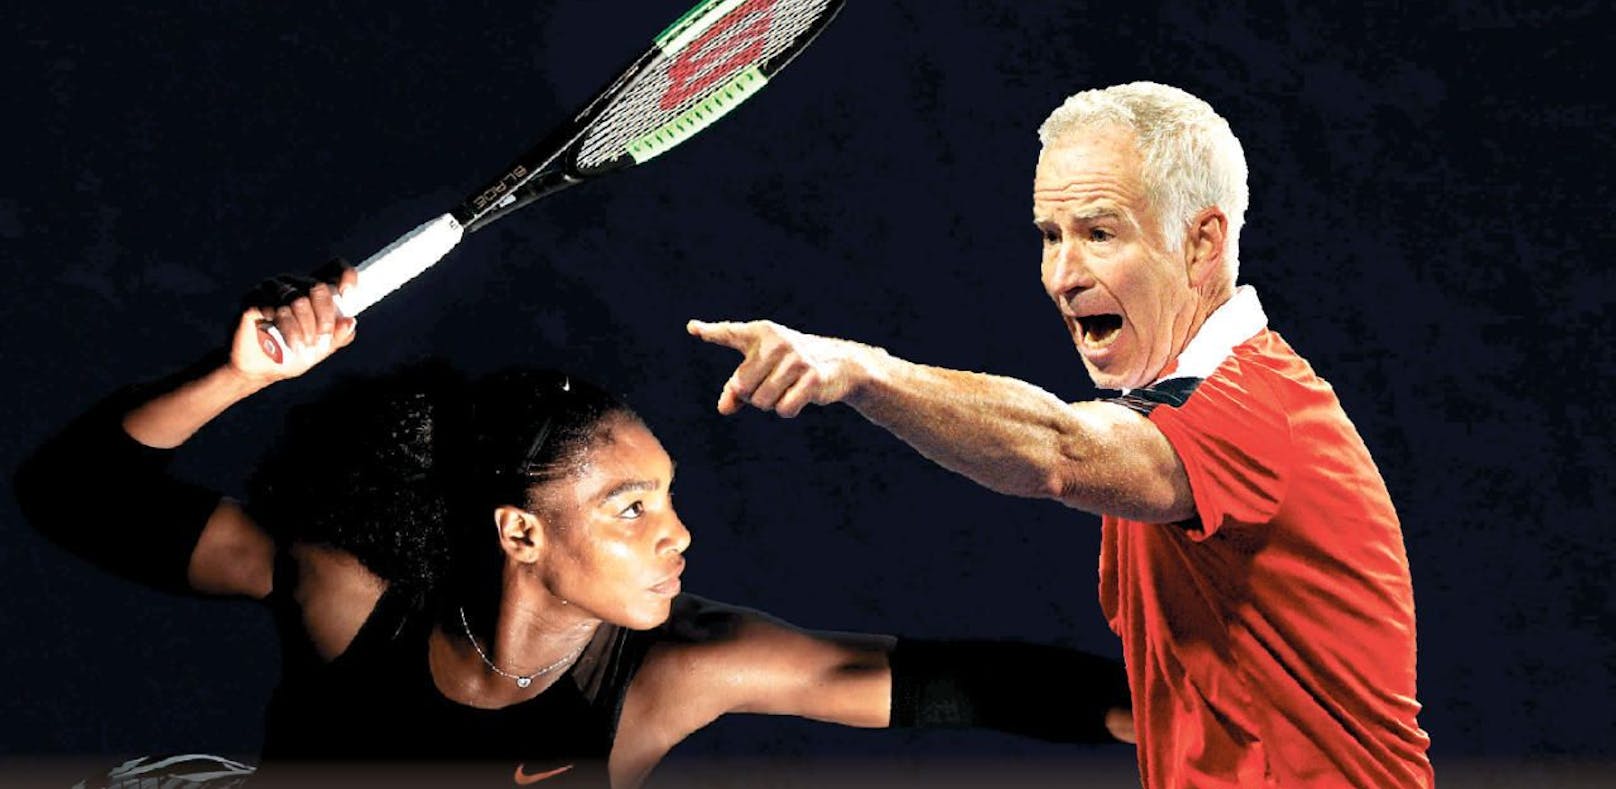 McEnroe gegen Williams: "Sorry" nach Macho-Eklat